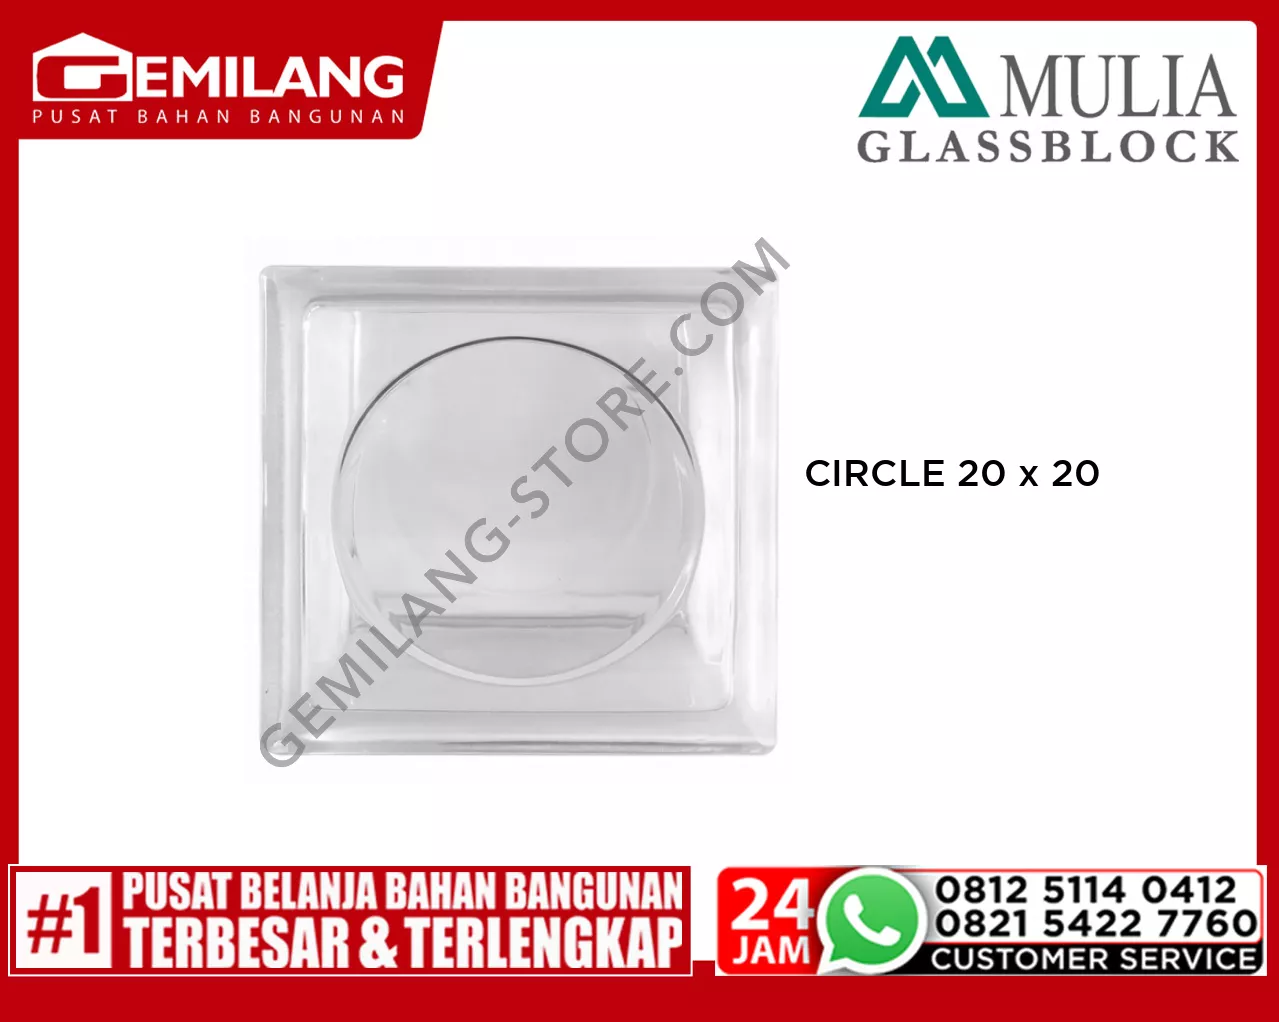 MULIA GLASS BLOCK CIRCLE 20 x 20